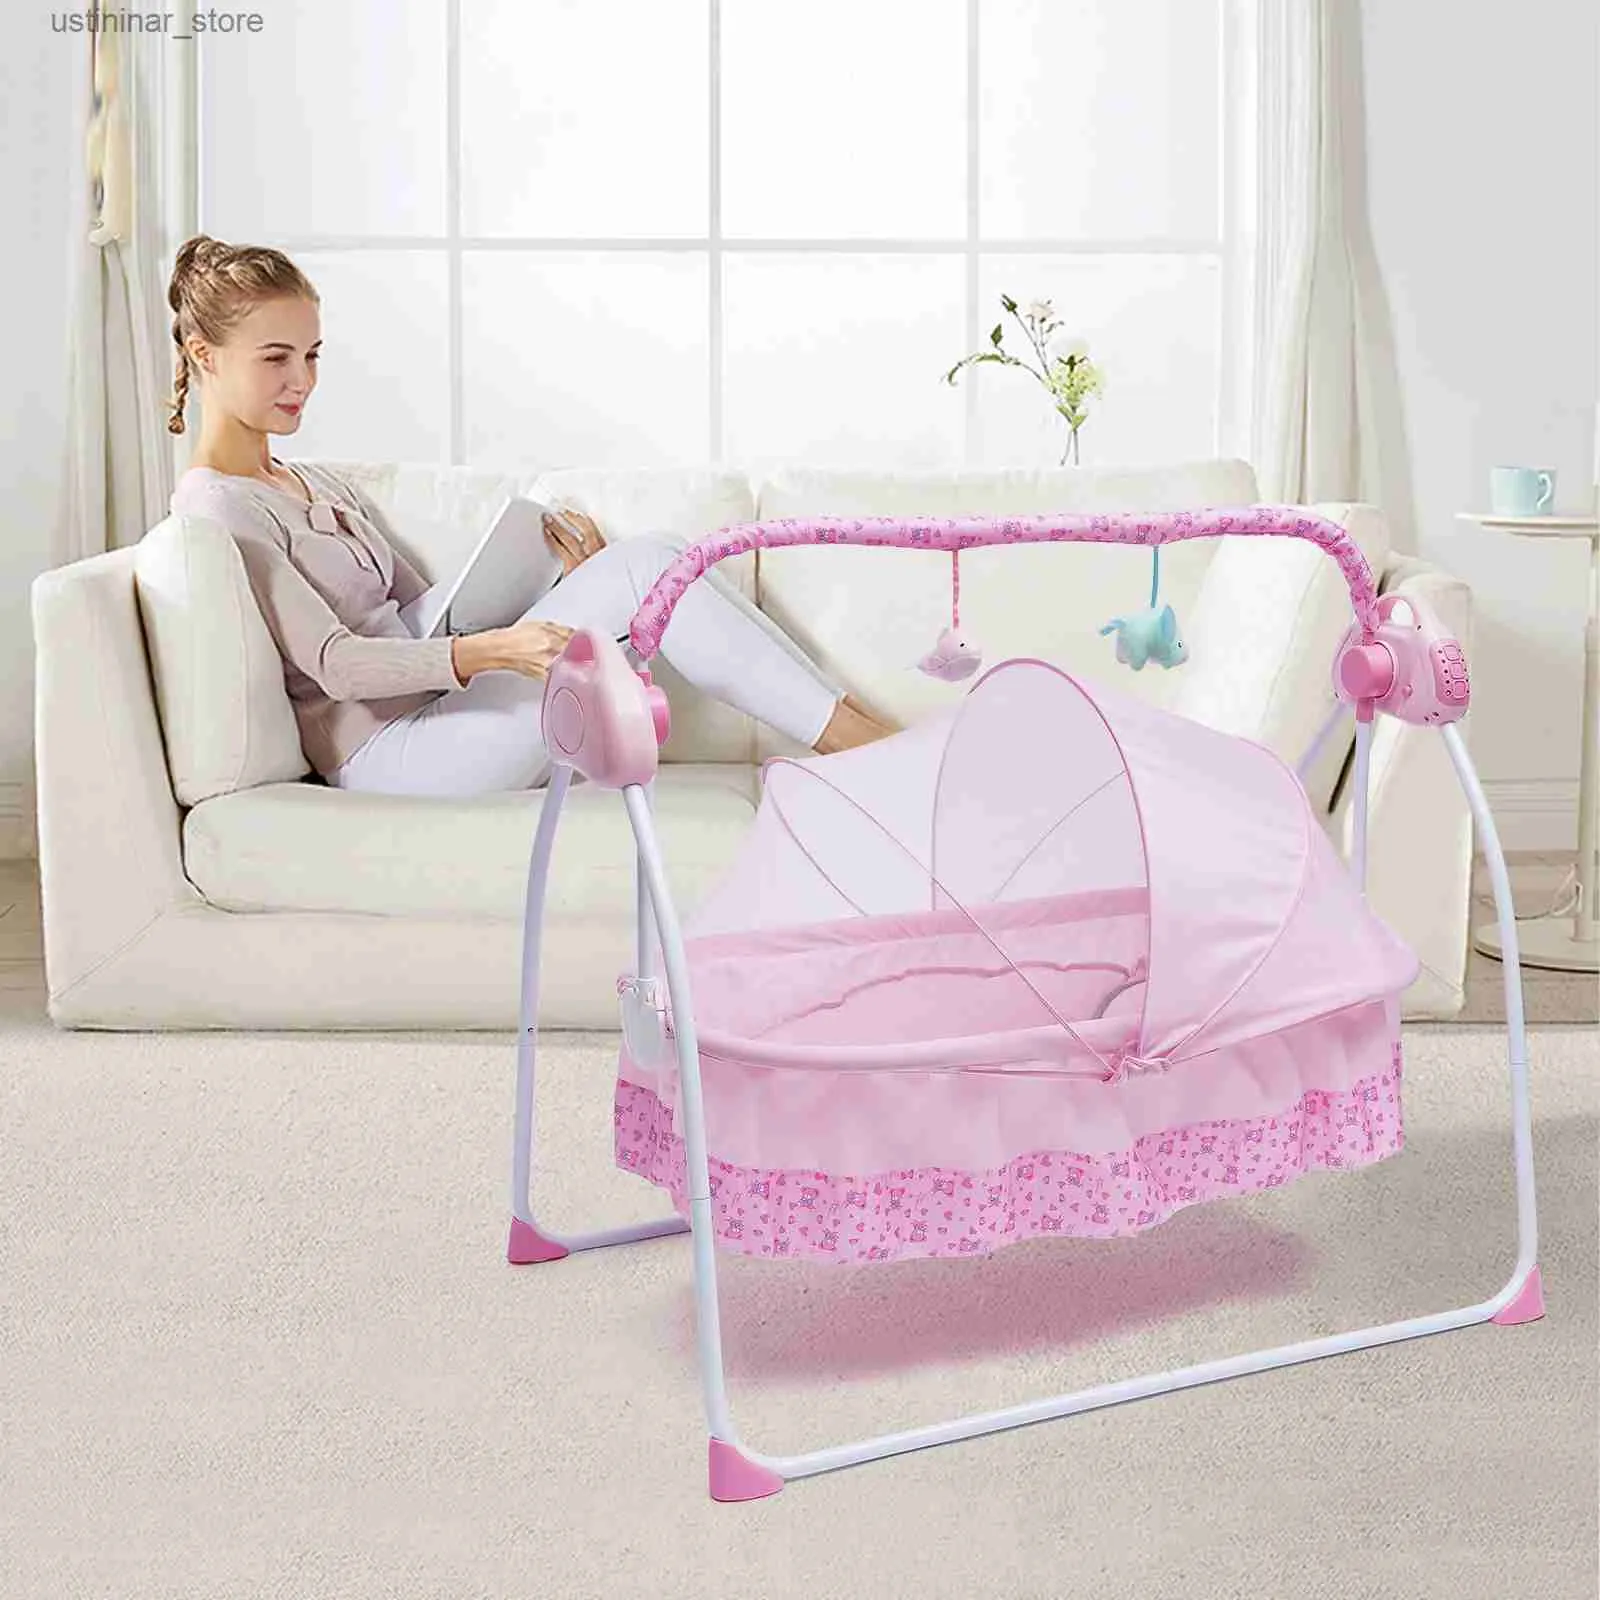 Baby Cribs 5 Gears Regulowane łóżeczko dziecięce Cradle Electric Auto-Hośne bujanie bassinet Timer Bluetooth Przechodnia Meble + Mat L416